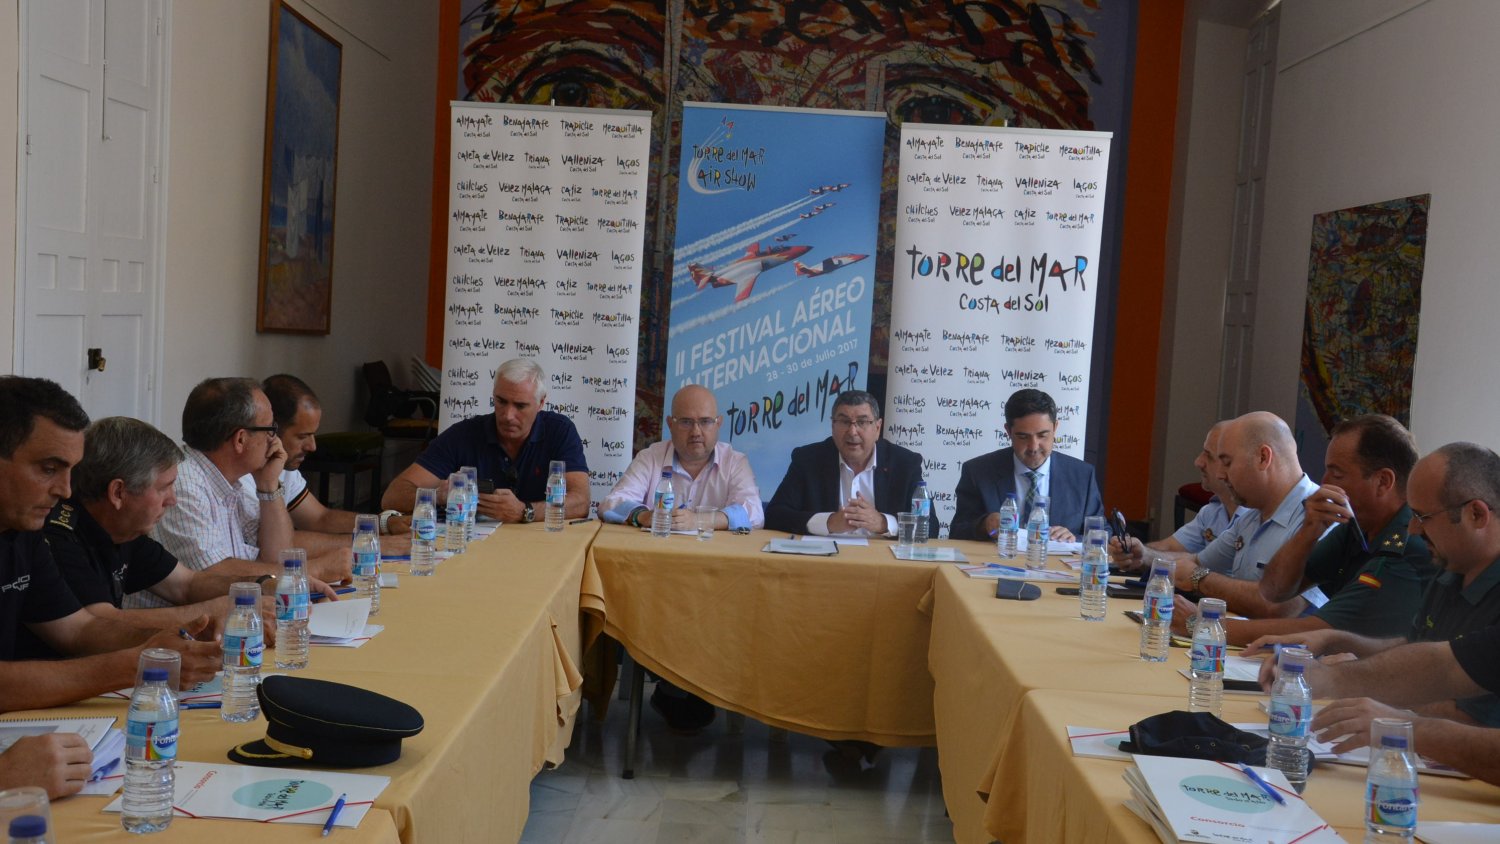 Más de 40 aeronaves participarán en la segunda edición del Festival Internacional Air Show de Torre del Mar